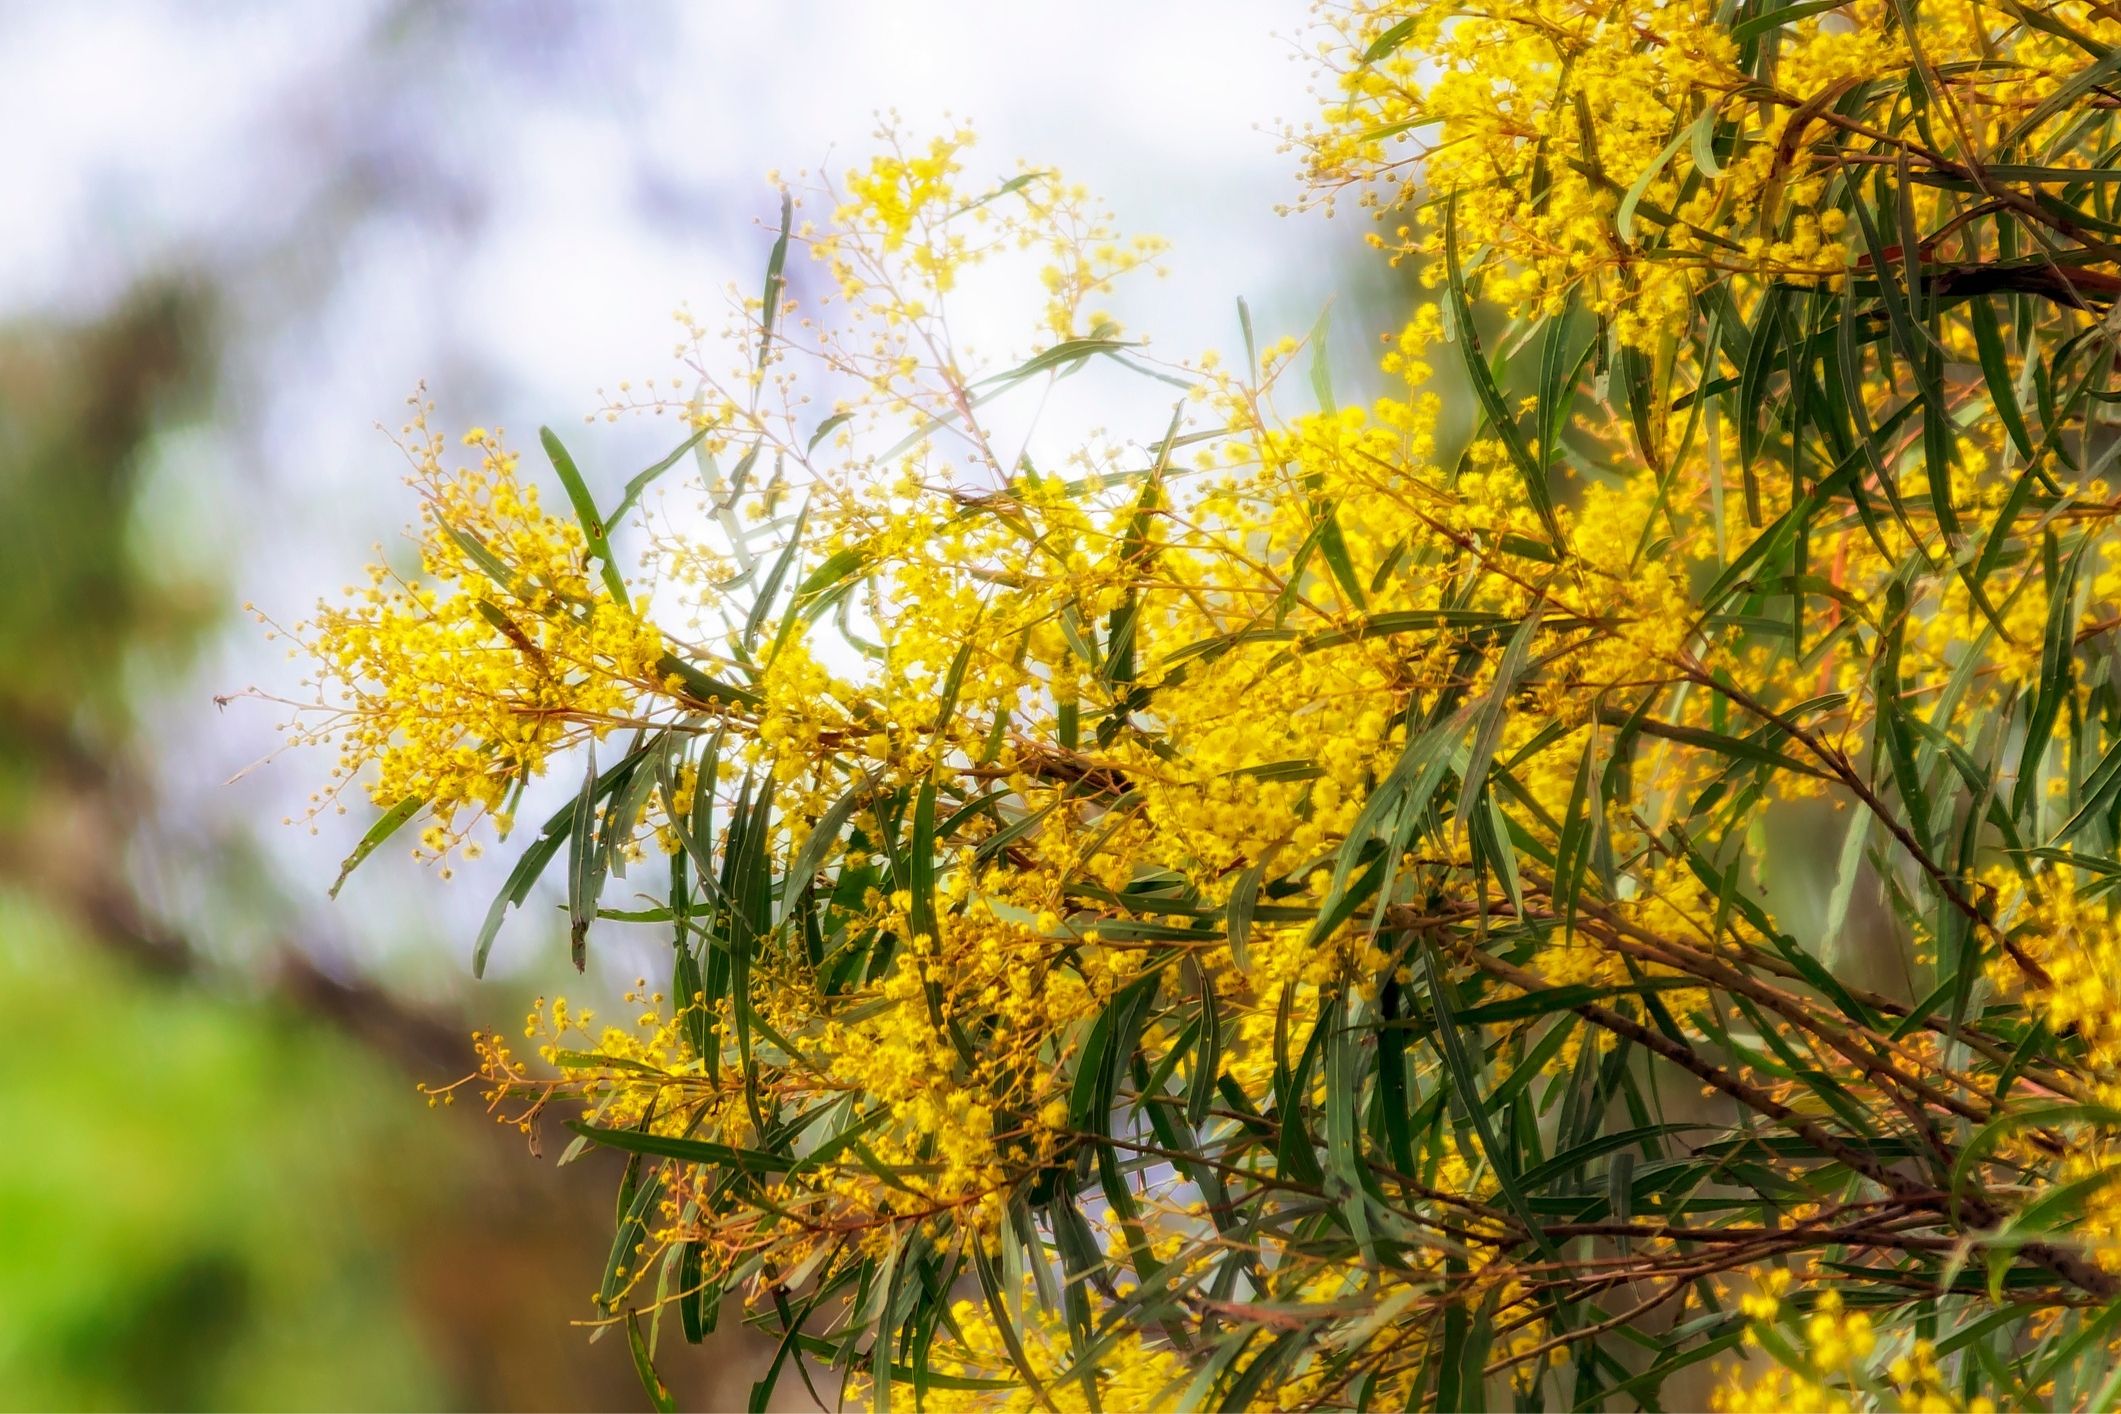 Australia native plants